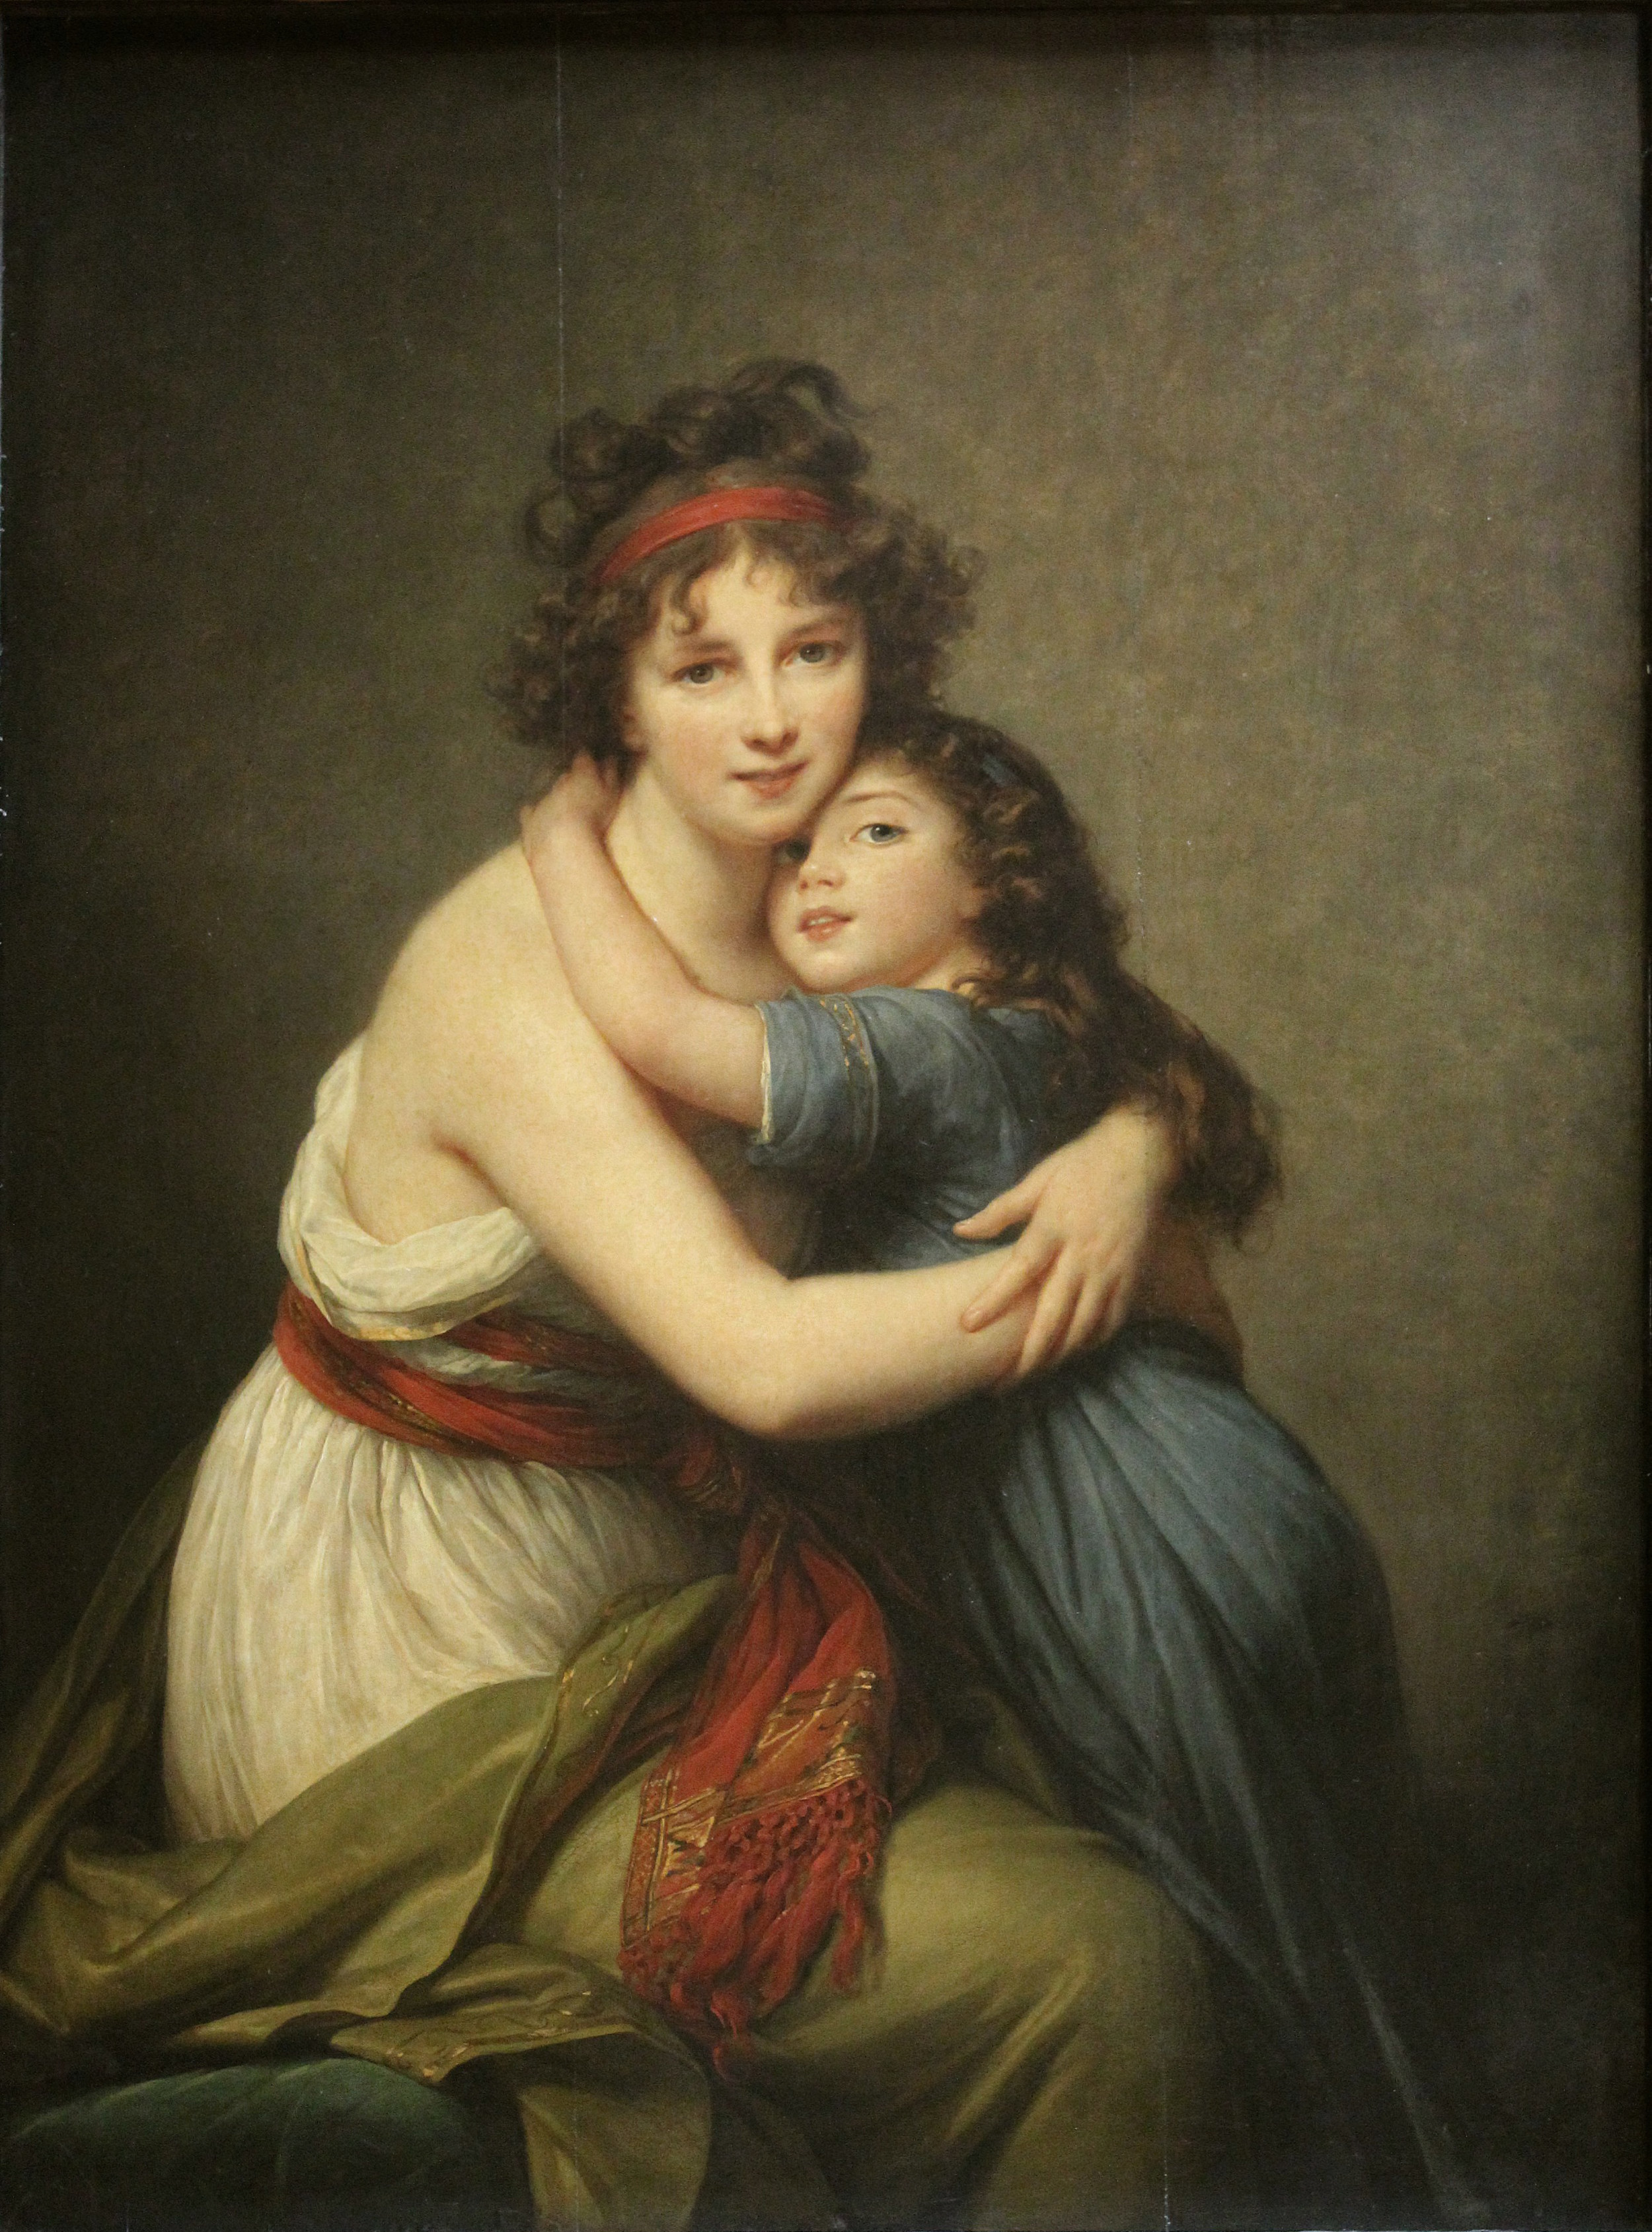 Elisabeth Vigée Lebrun, Self Portrait with Her Daughter, 1789, oil on canvas, Musée du Louvre